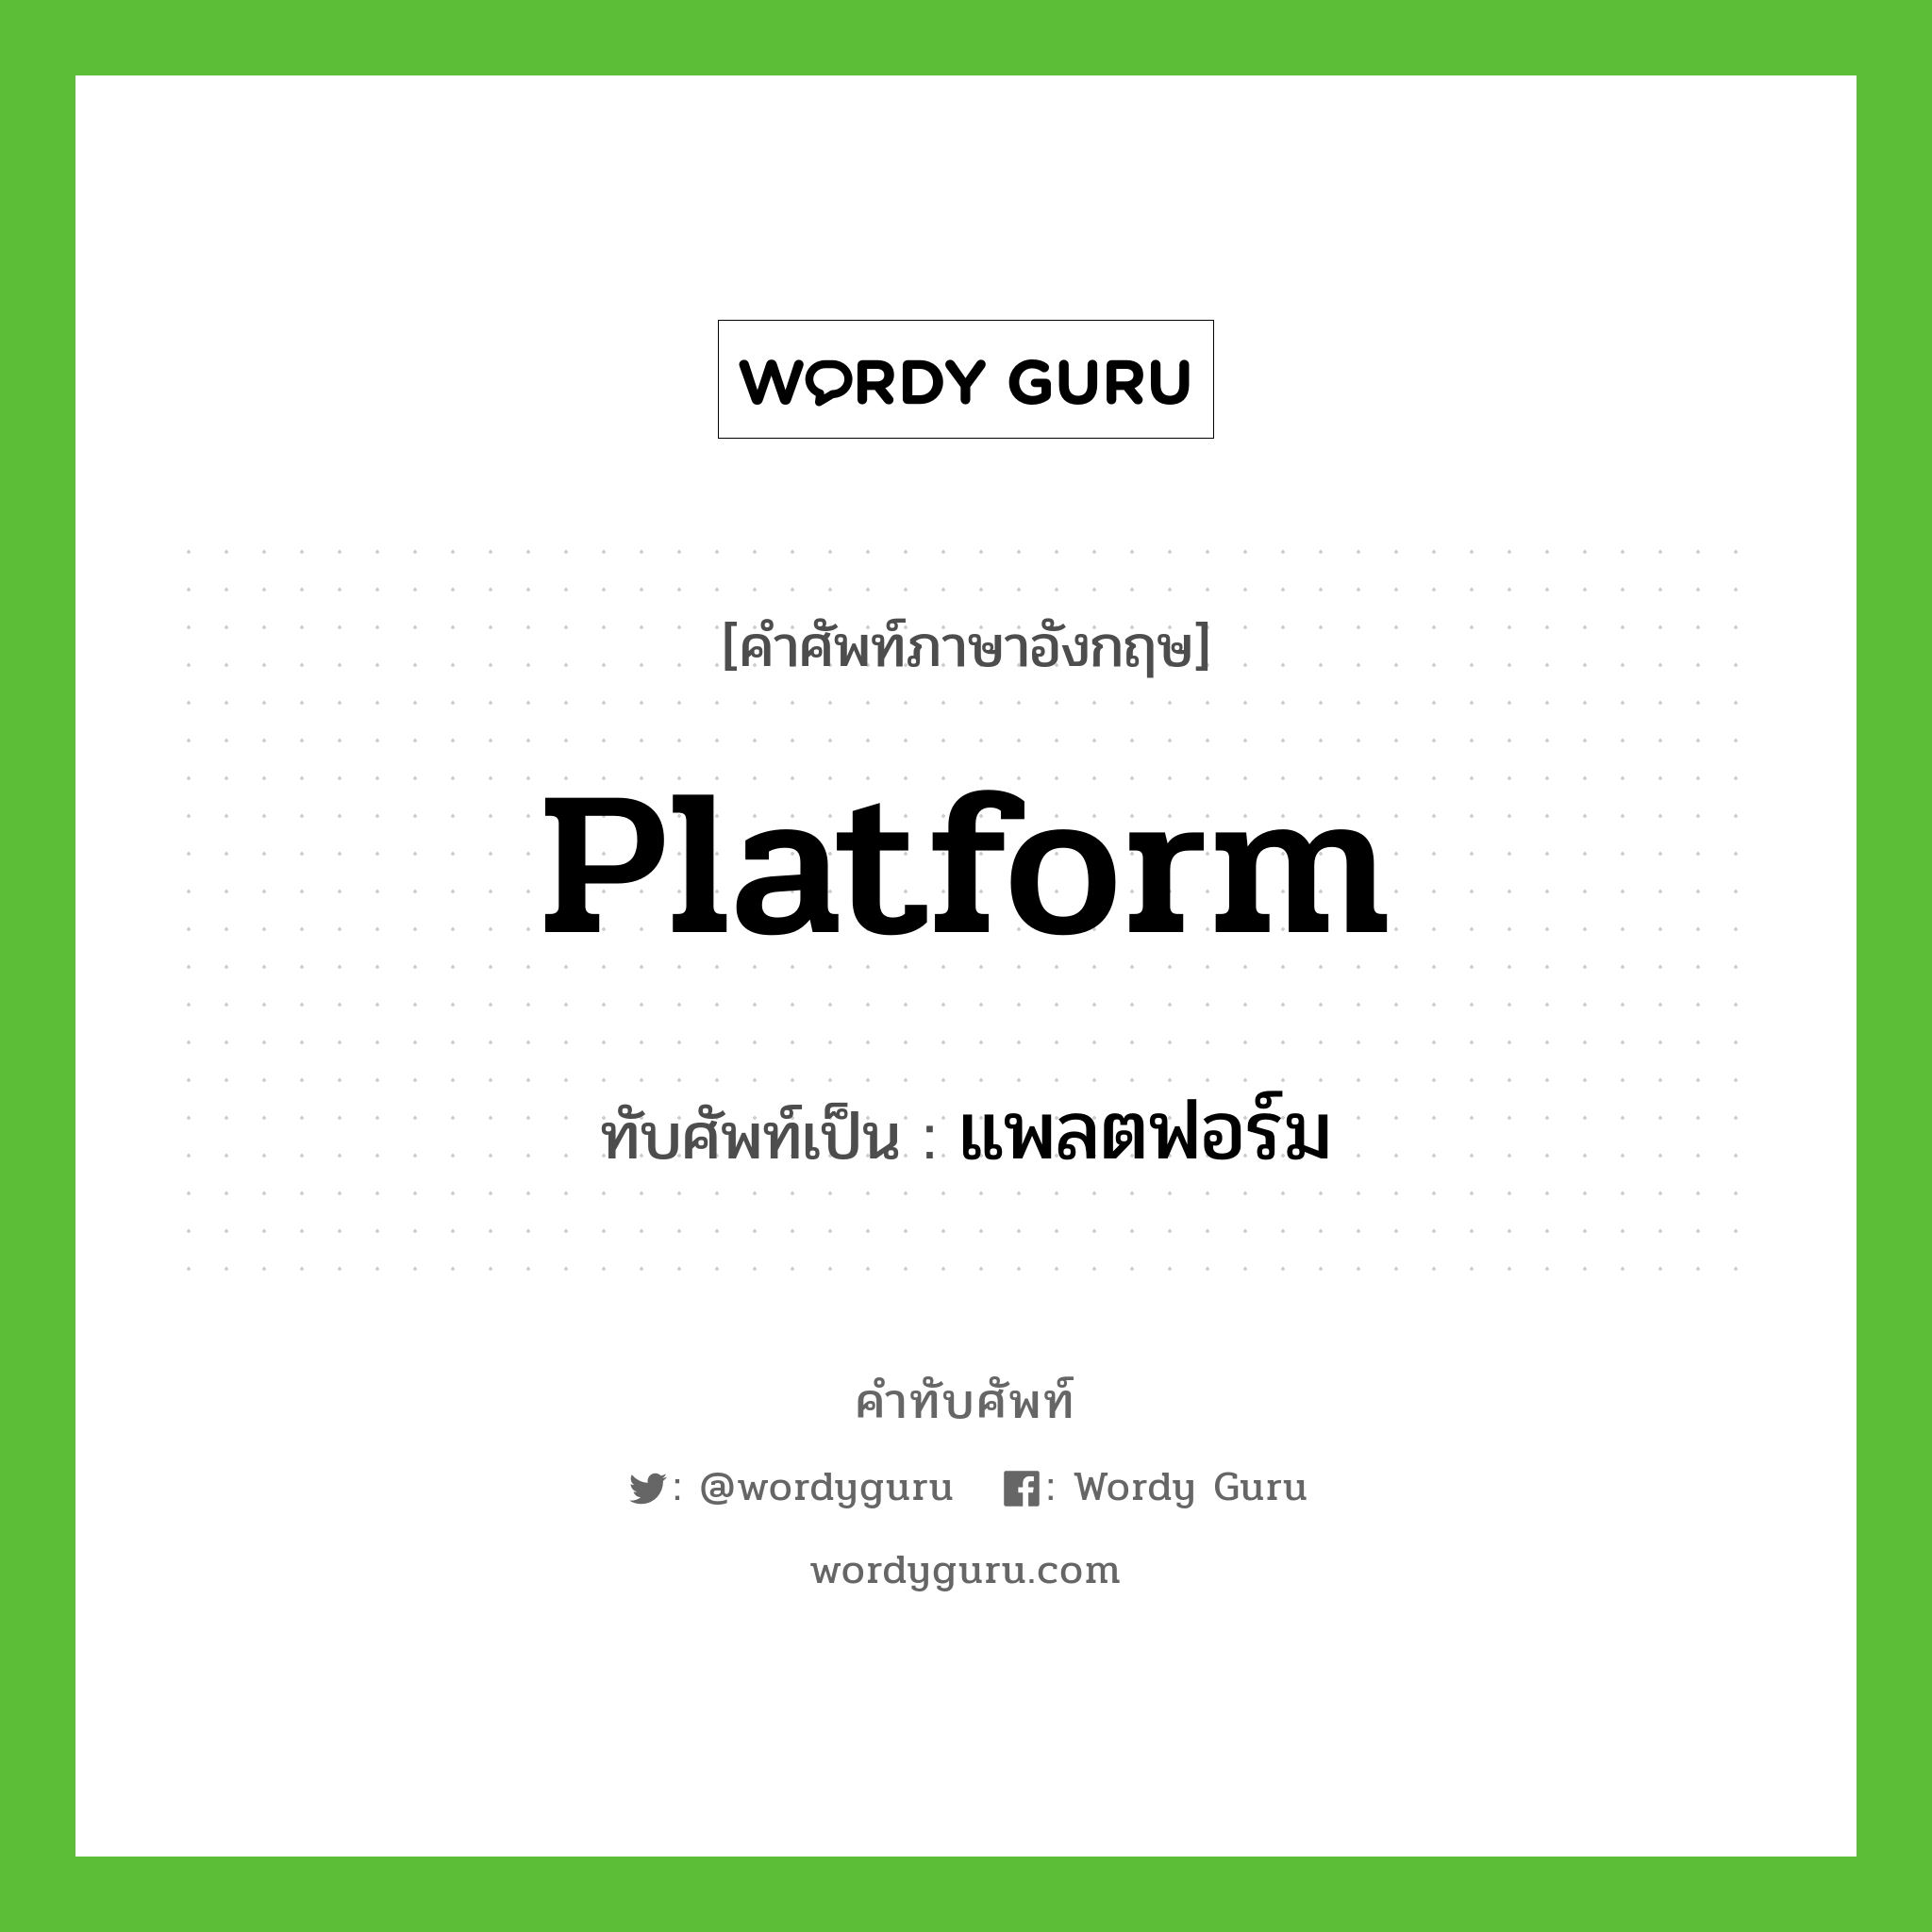 platform เขียนเป็นคำไทยว่าอะไร?, คำศัพท์ภาษาอังกฤษ platform ทับศัพท์เป็น แพลตฟอร์ม